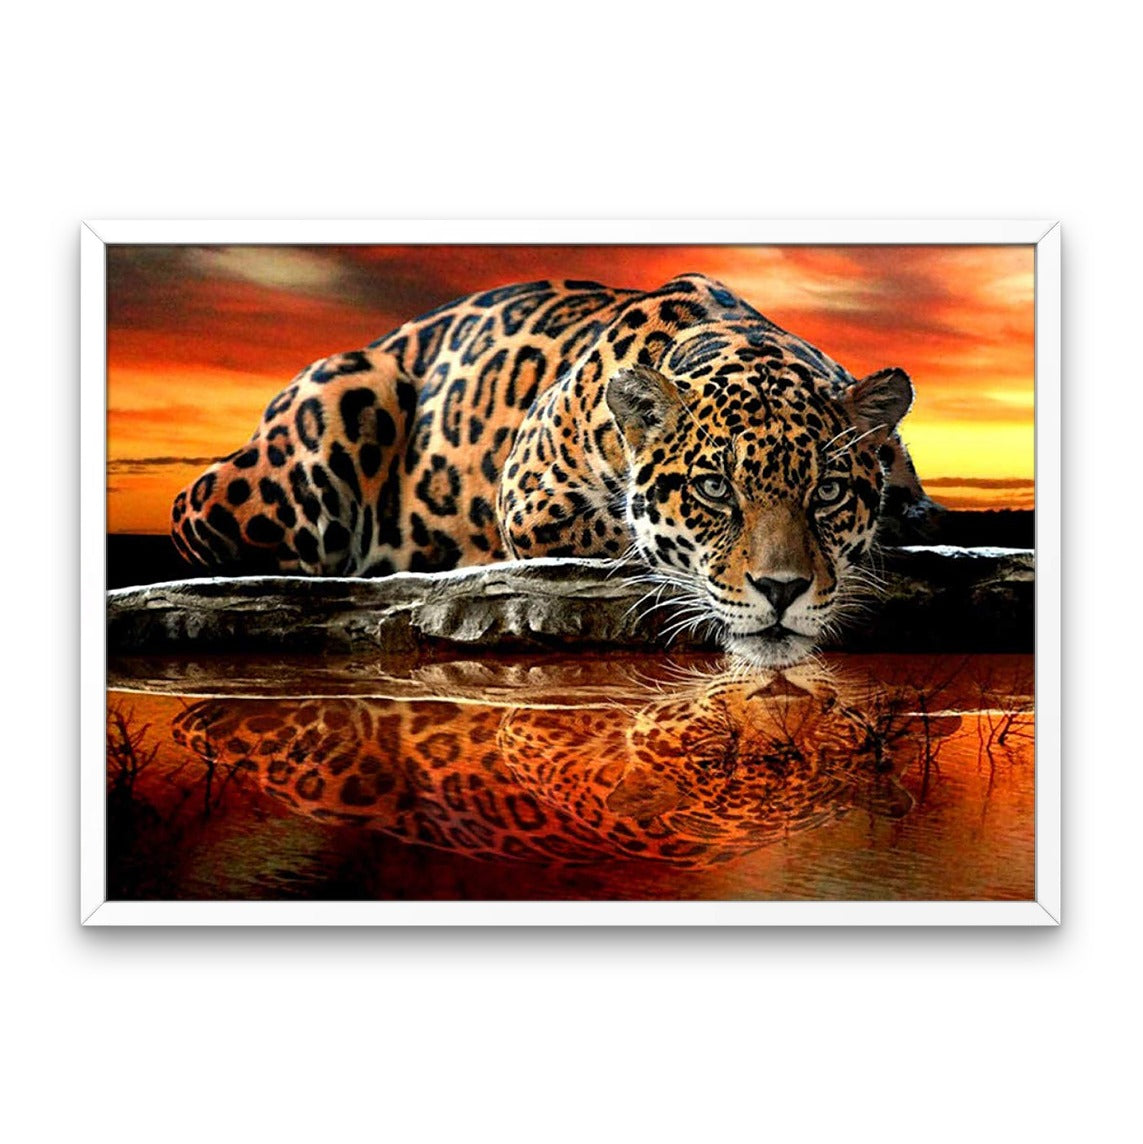 Fierce Leopard - Diamond Painting Kit